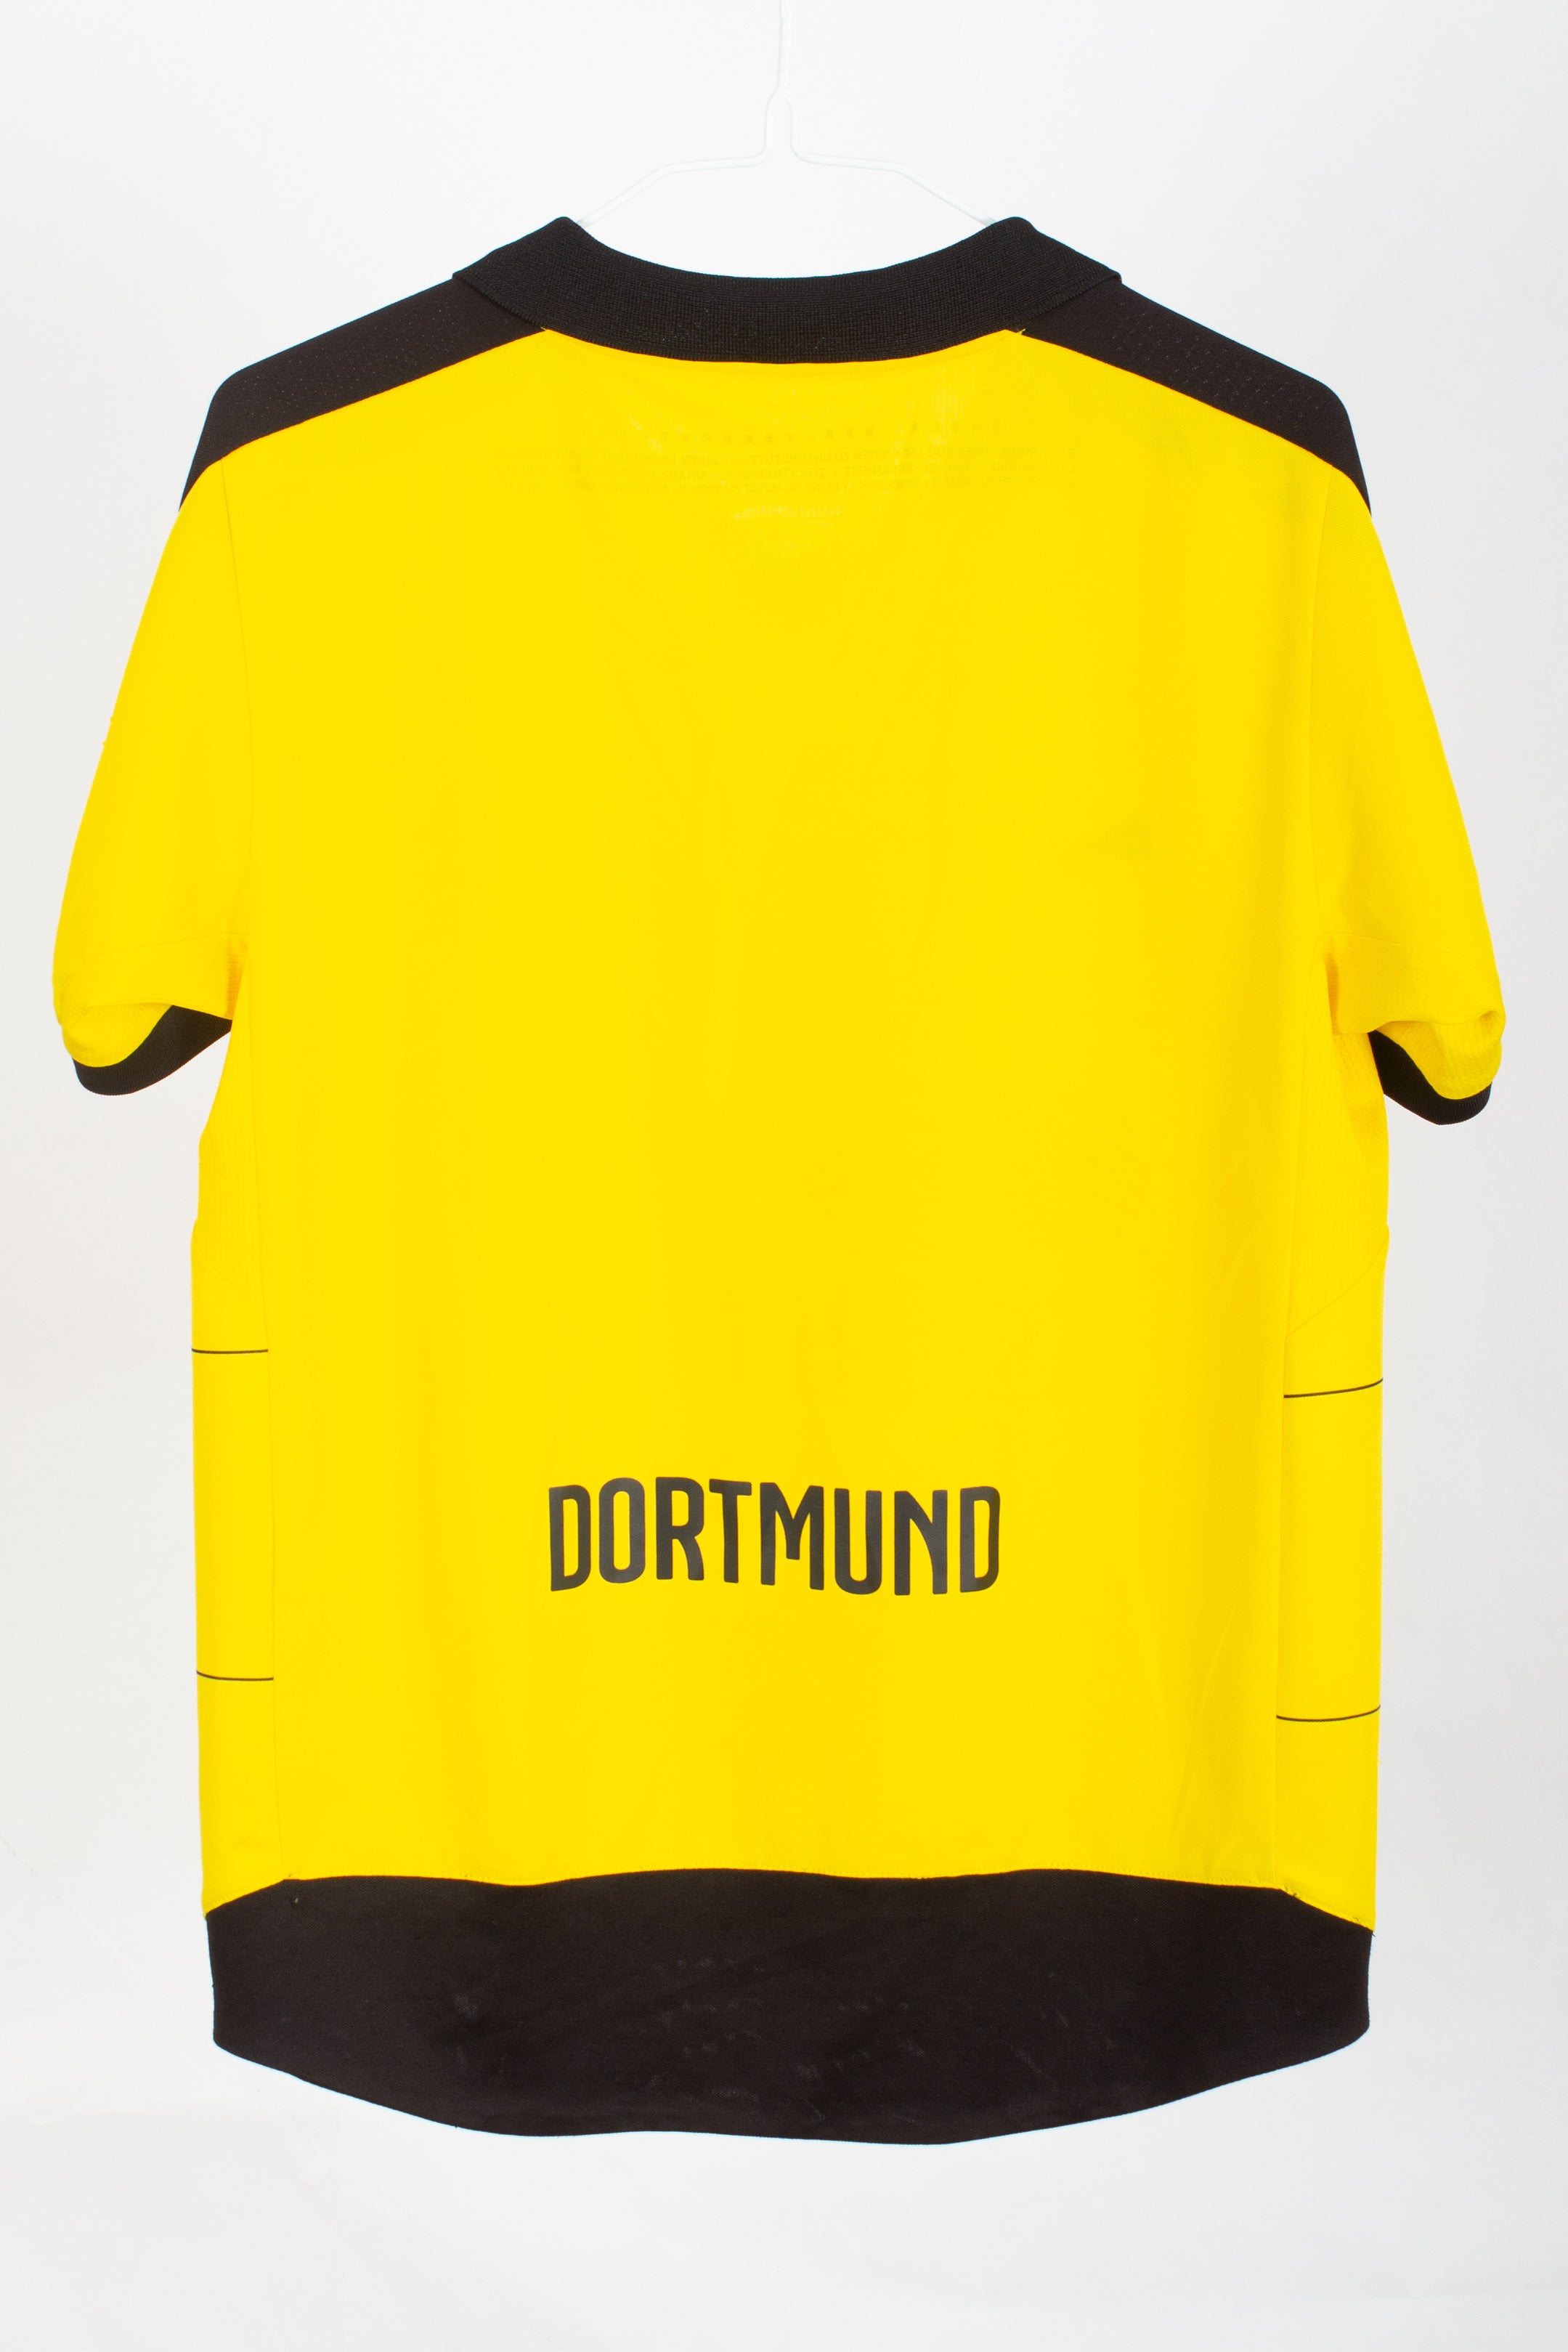 Kids Borussia Dortmund 2015/16 Shirt